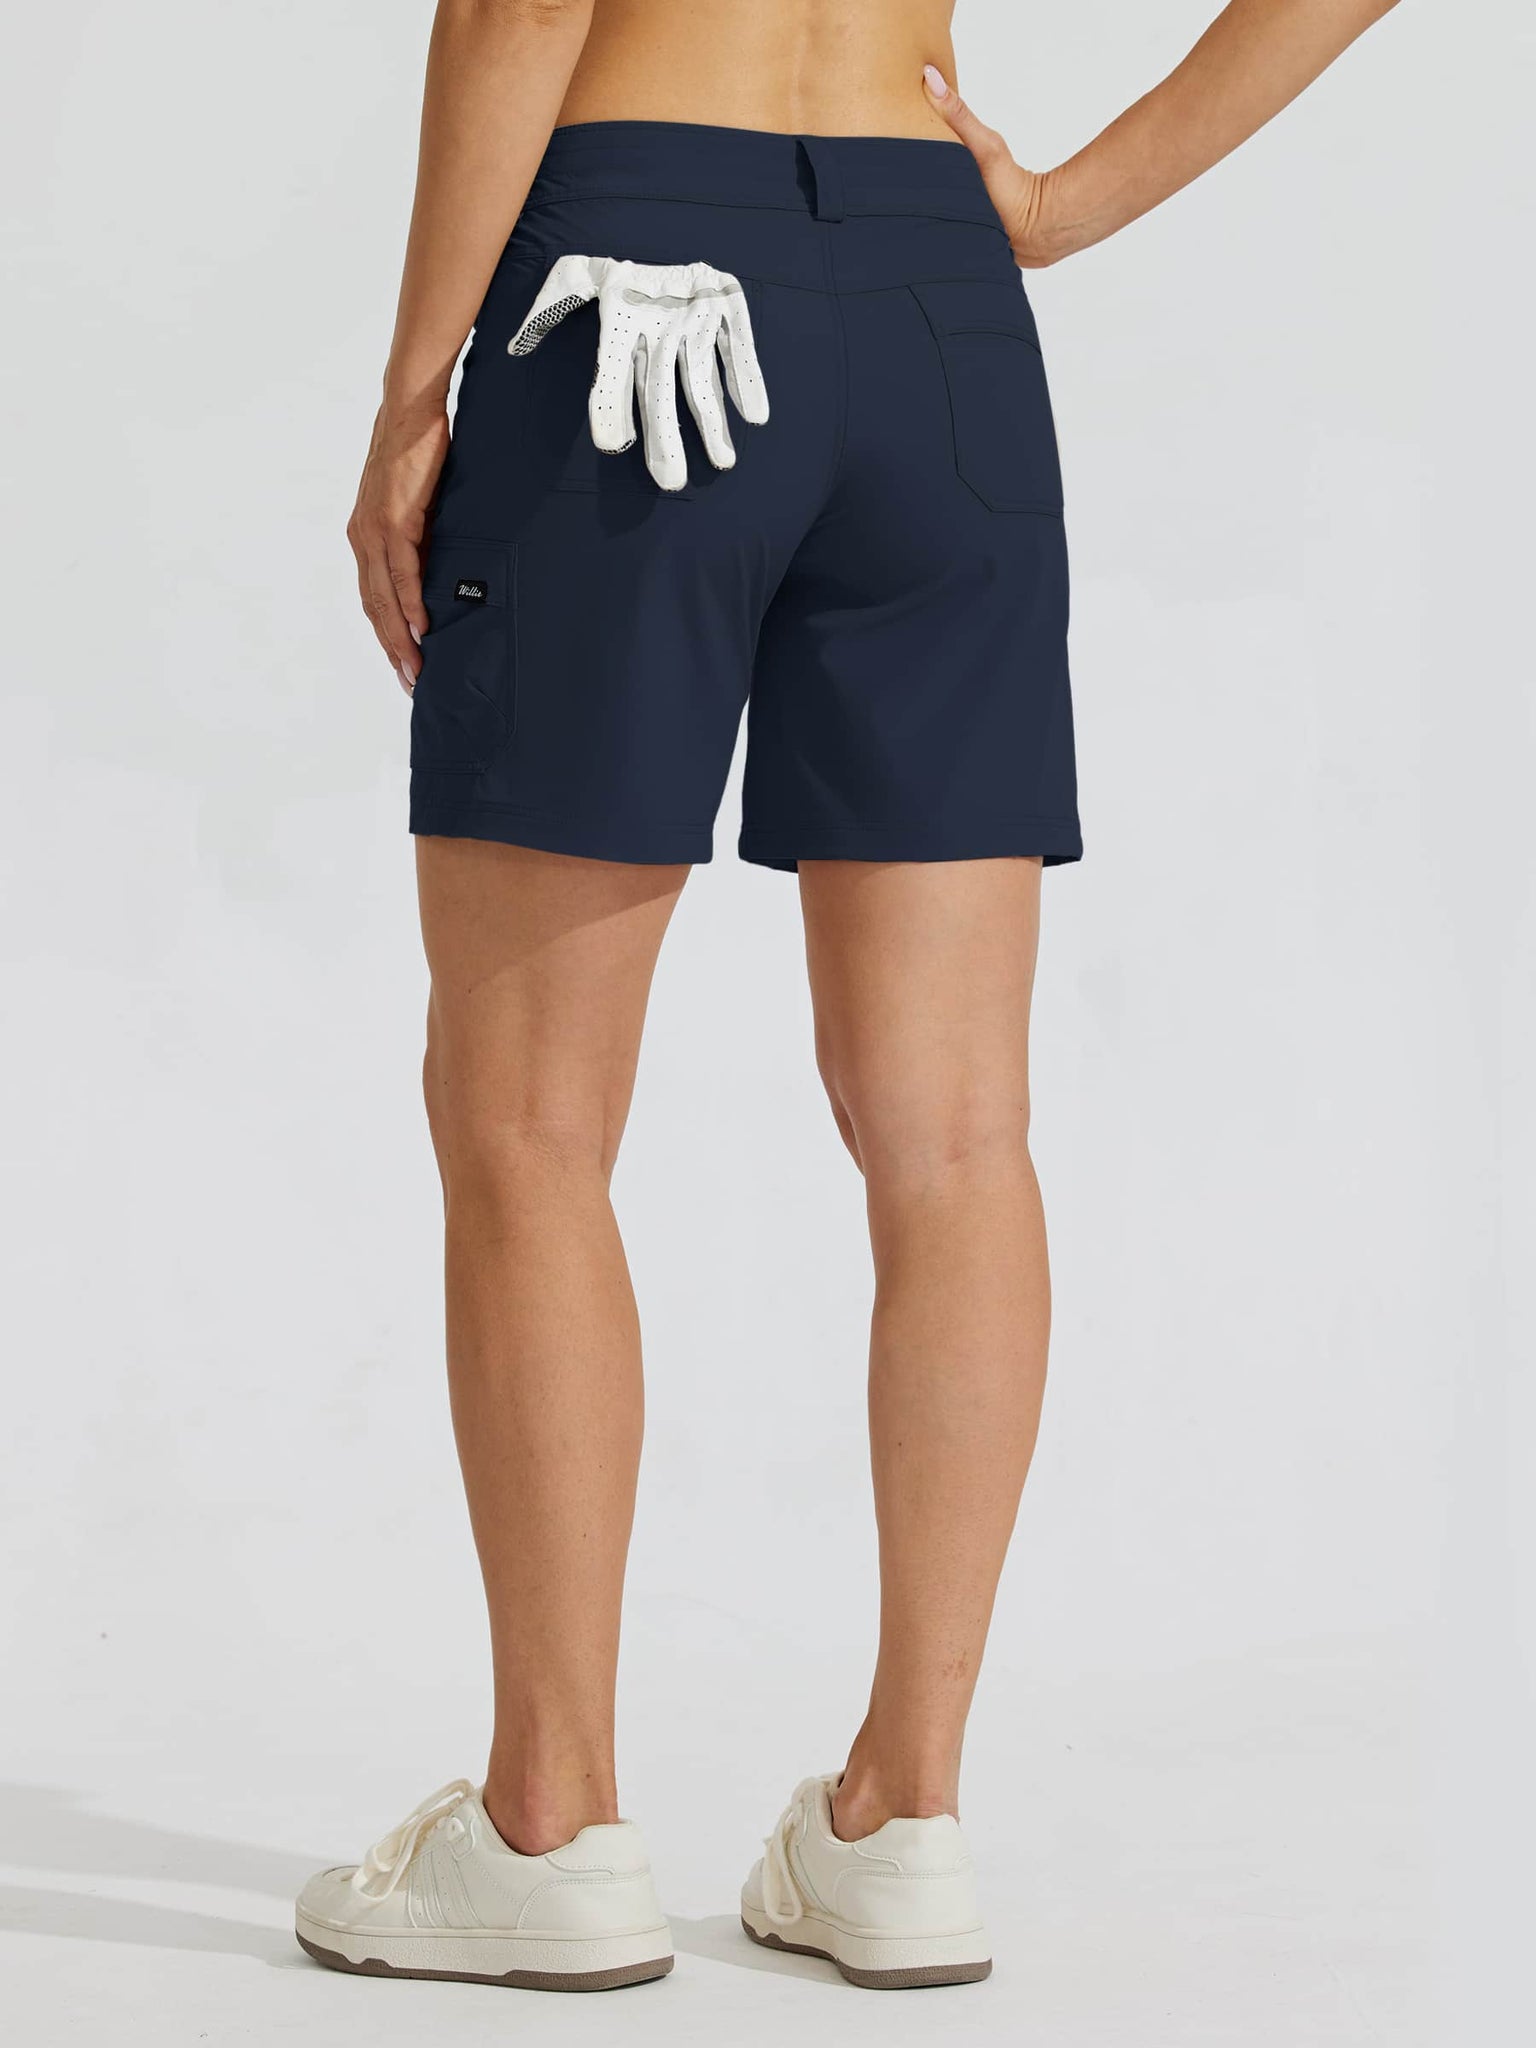 Women's Outdoor Pro Shorts Blue_model1